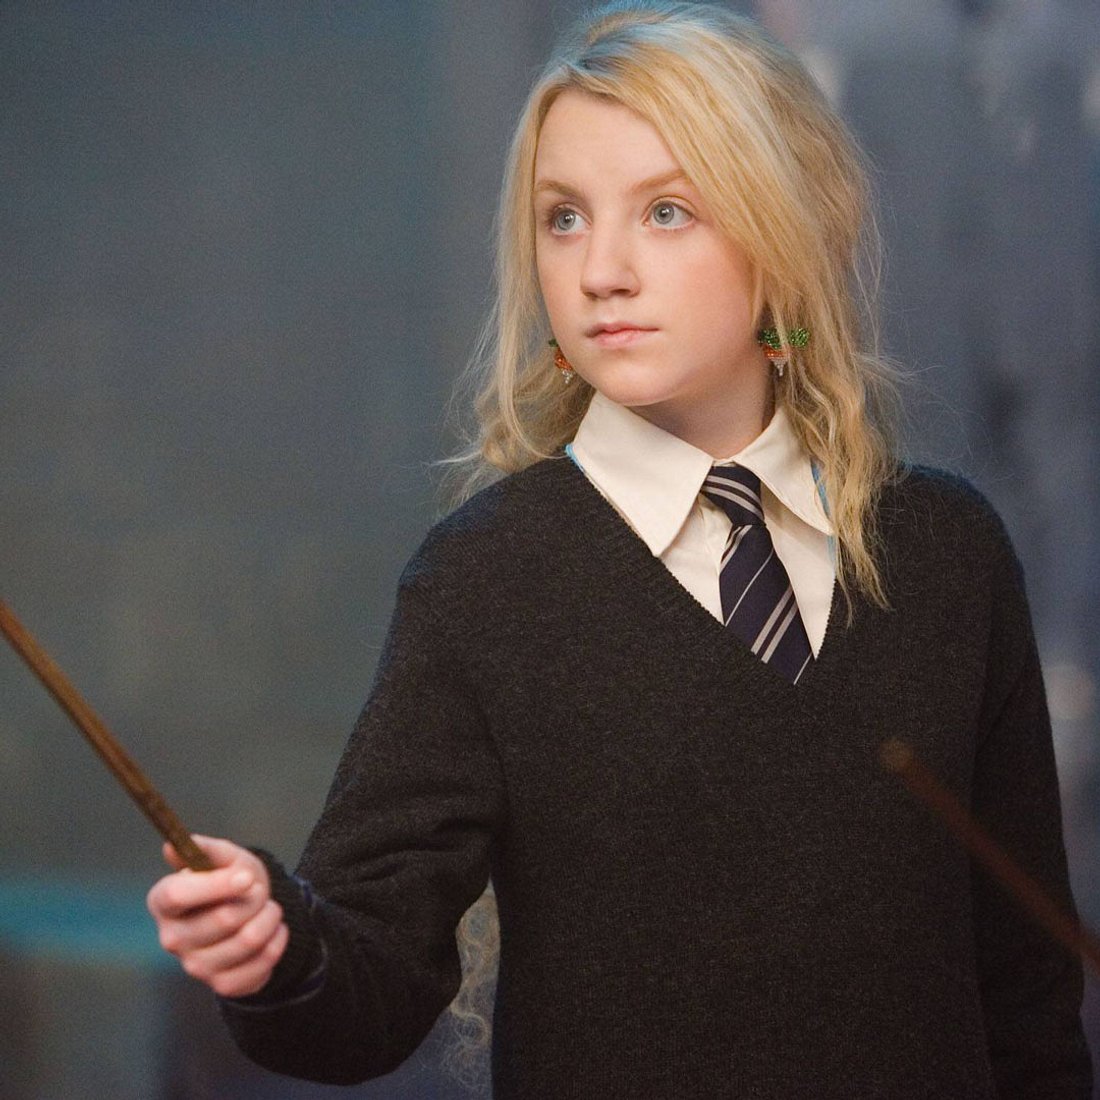 Harry Potter-Geheimnisse: Schauspielerin überzeugt mit verstecktem Talent!